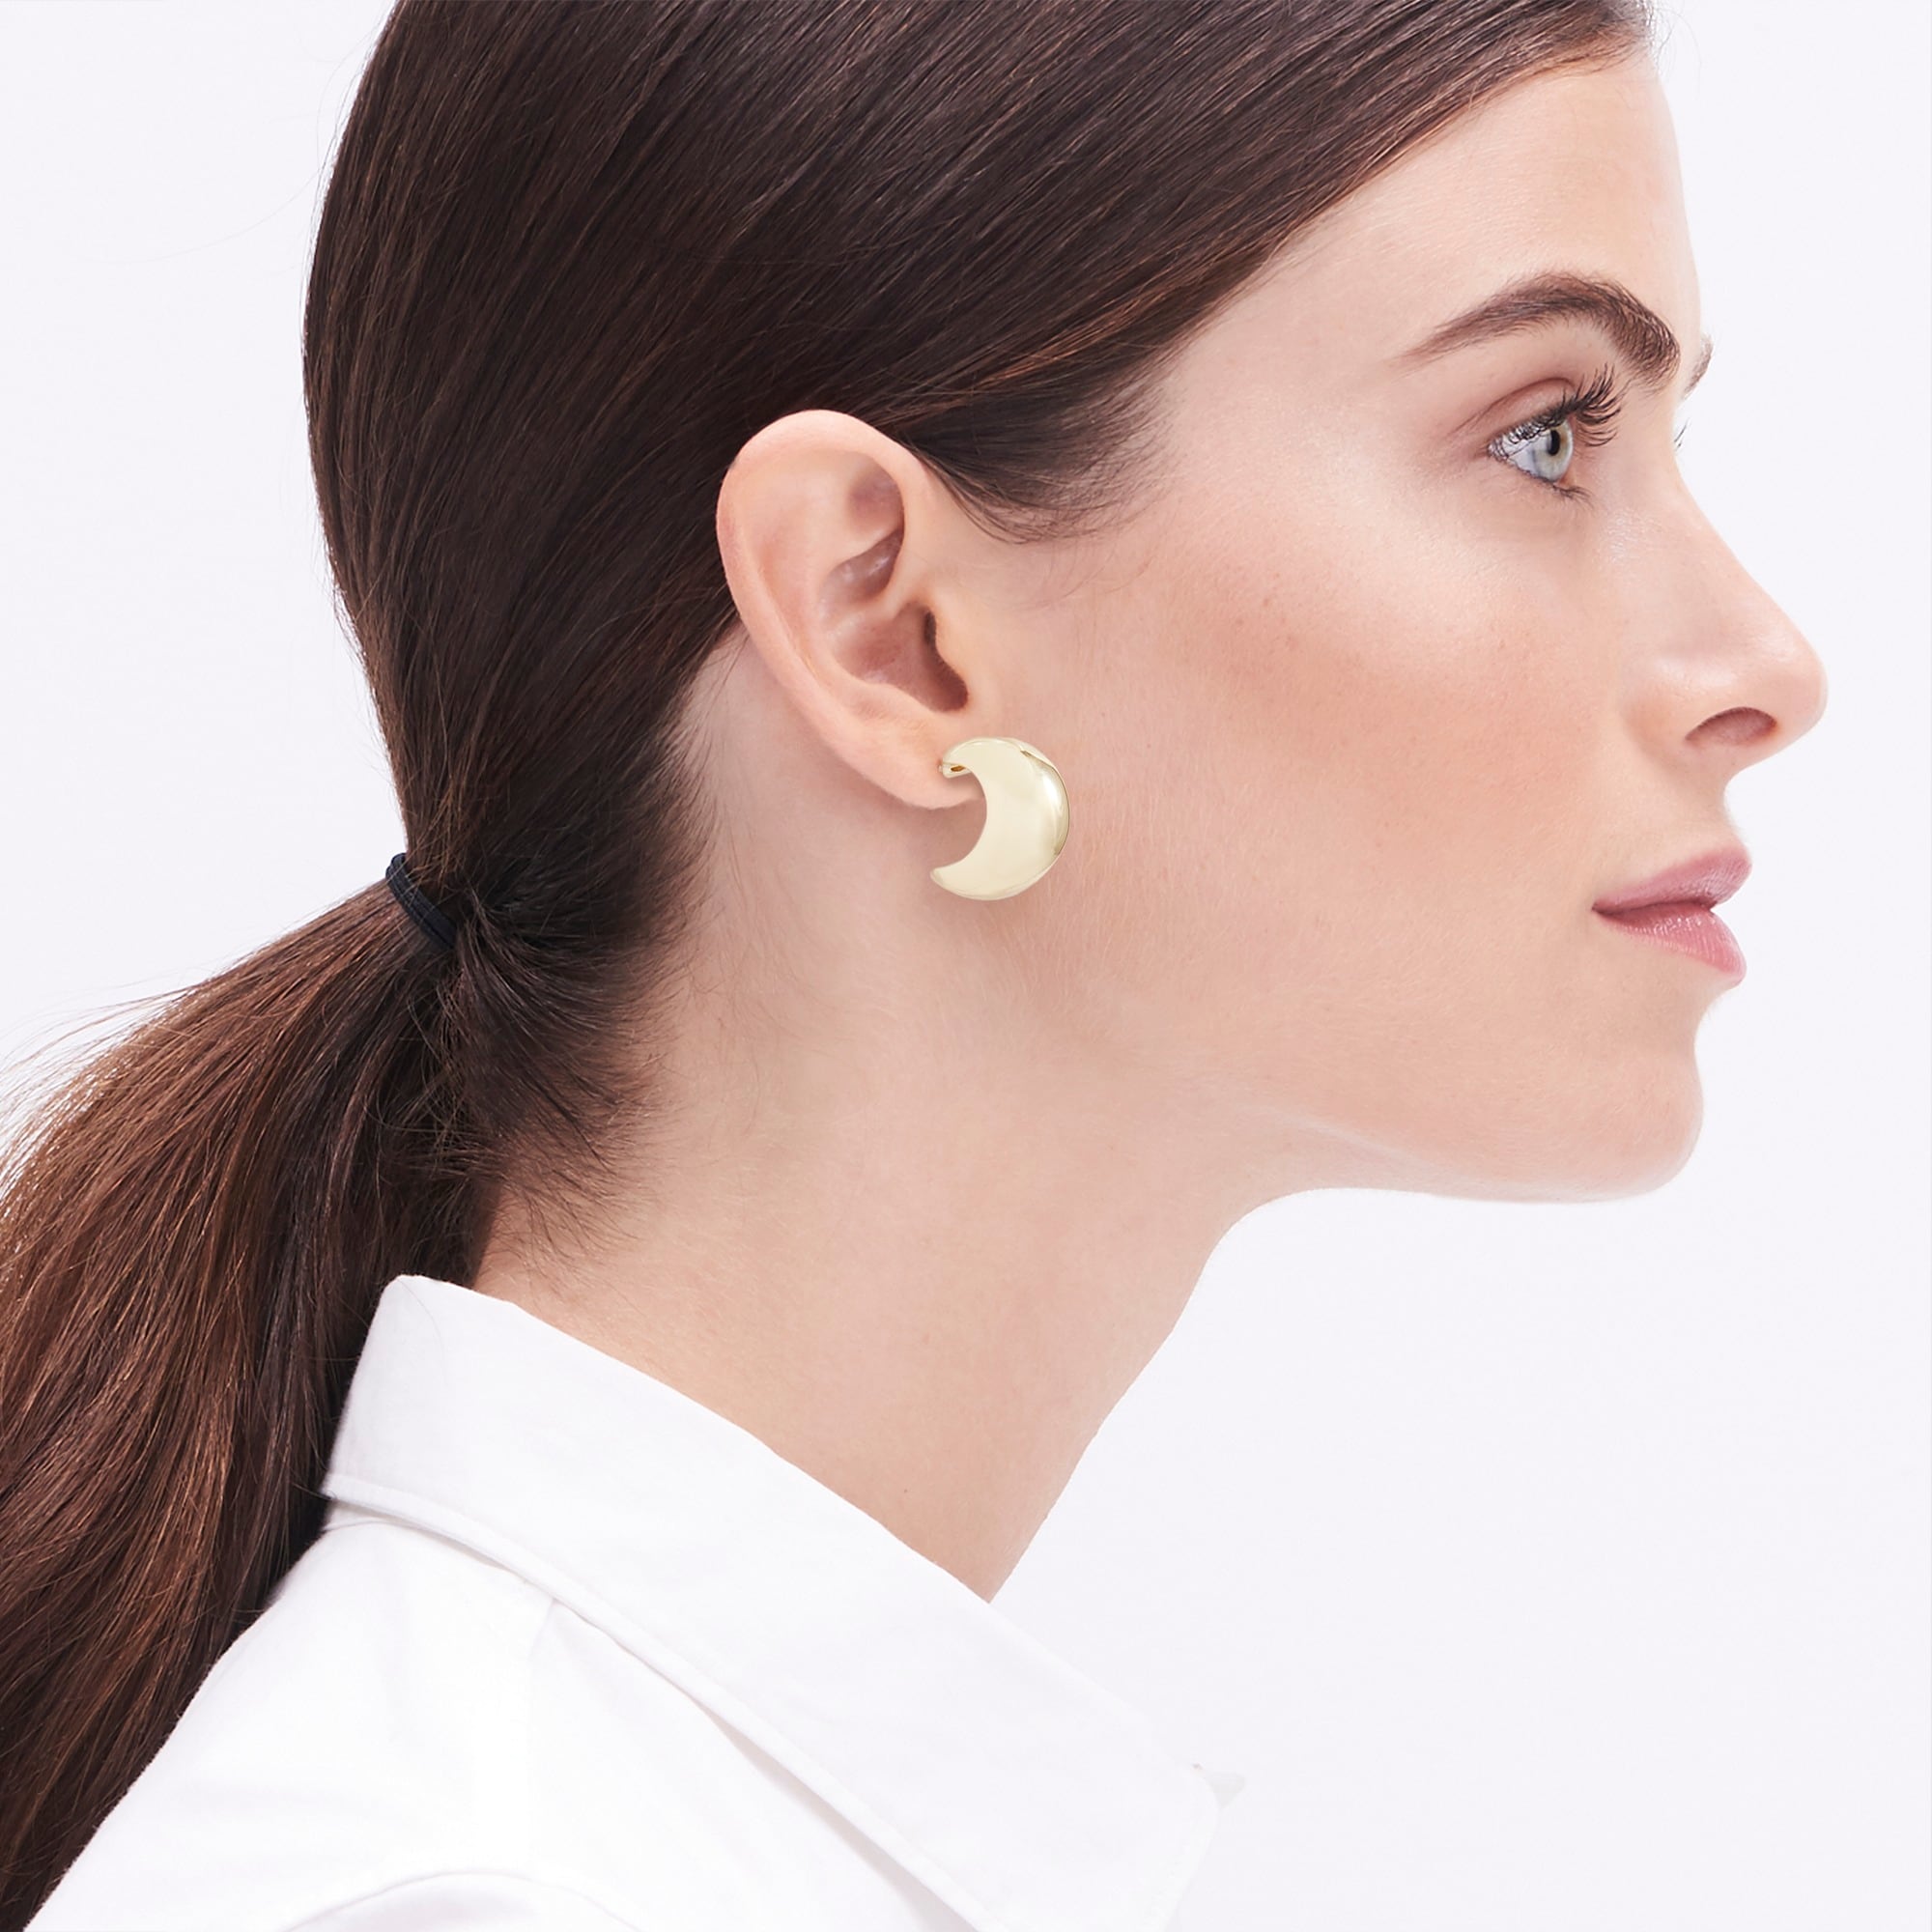 Orb earrings